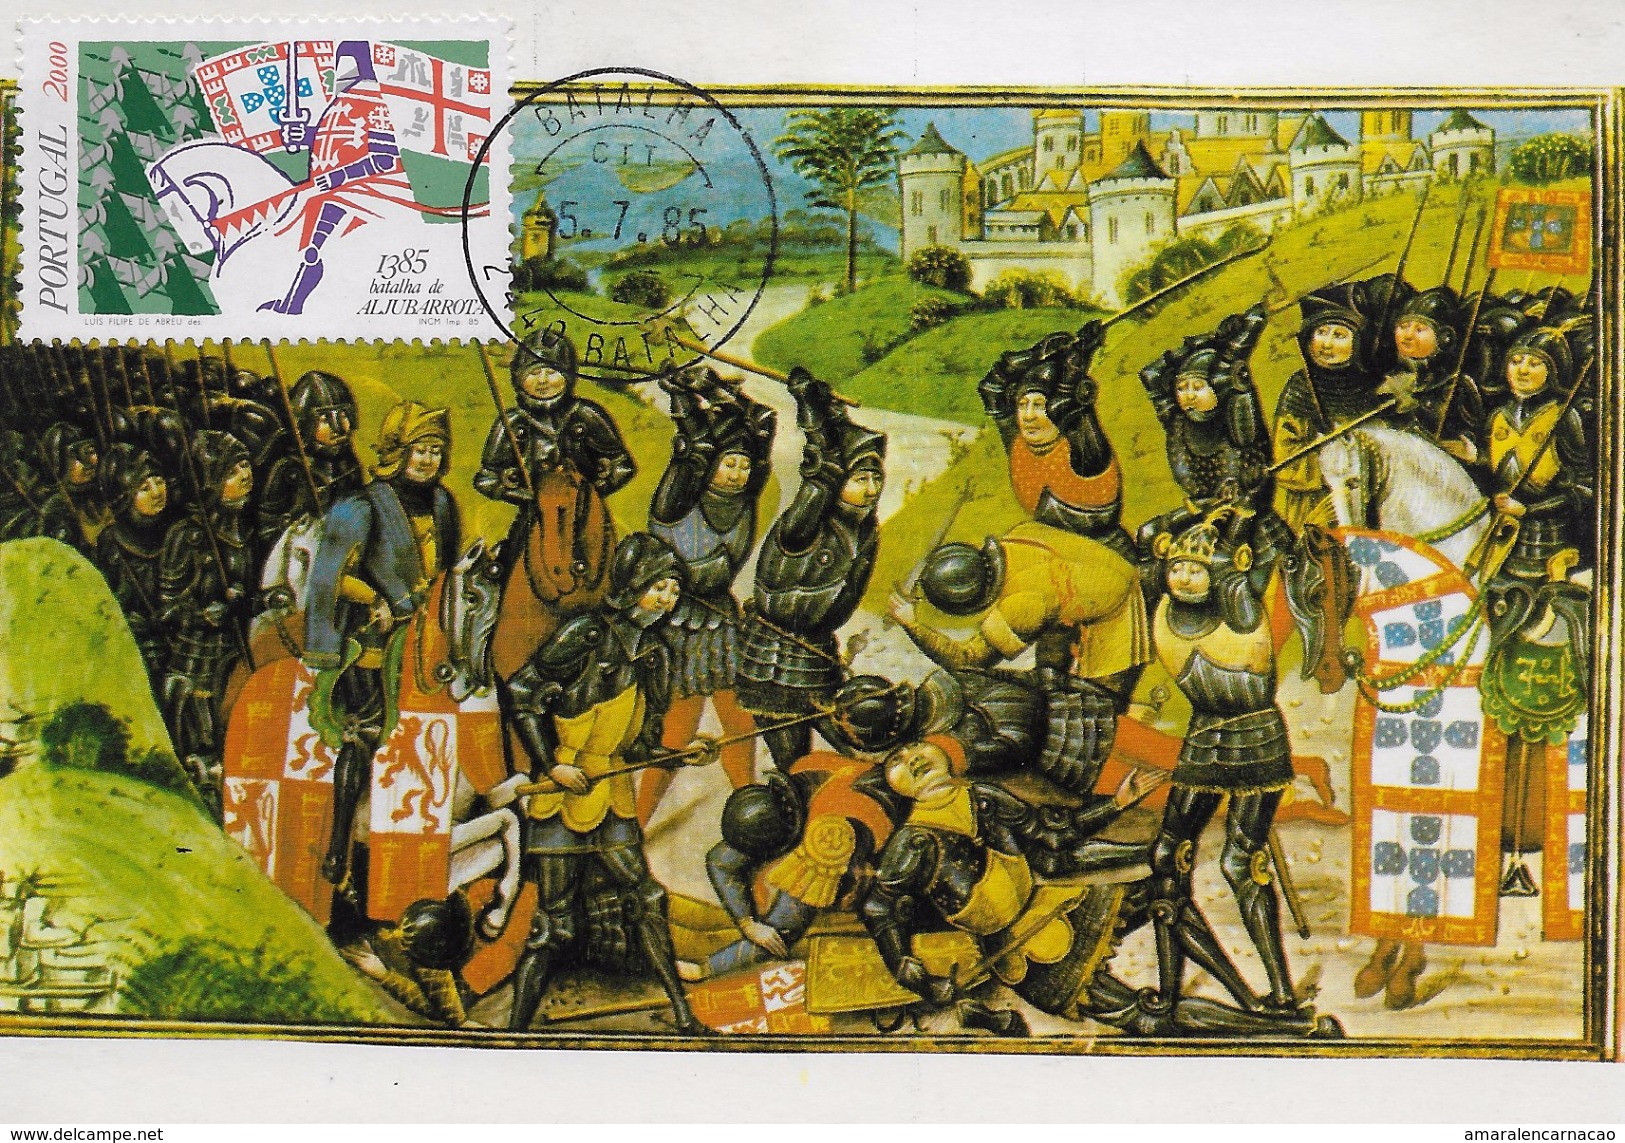 CARTE MAXIMUM - MAXICARD - MAXIMUMKART - MAXIMUM CARD - PORTUGAL - BATAILLE DE ALJUBARROTA (1385) - Cartes-maximum (CM)